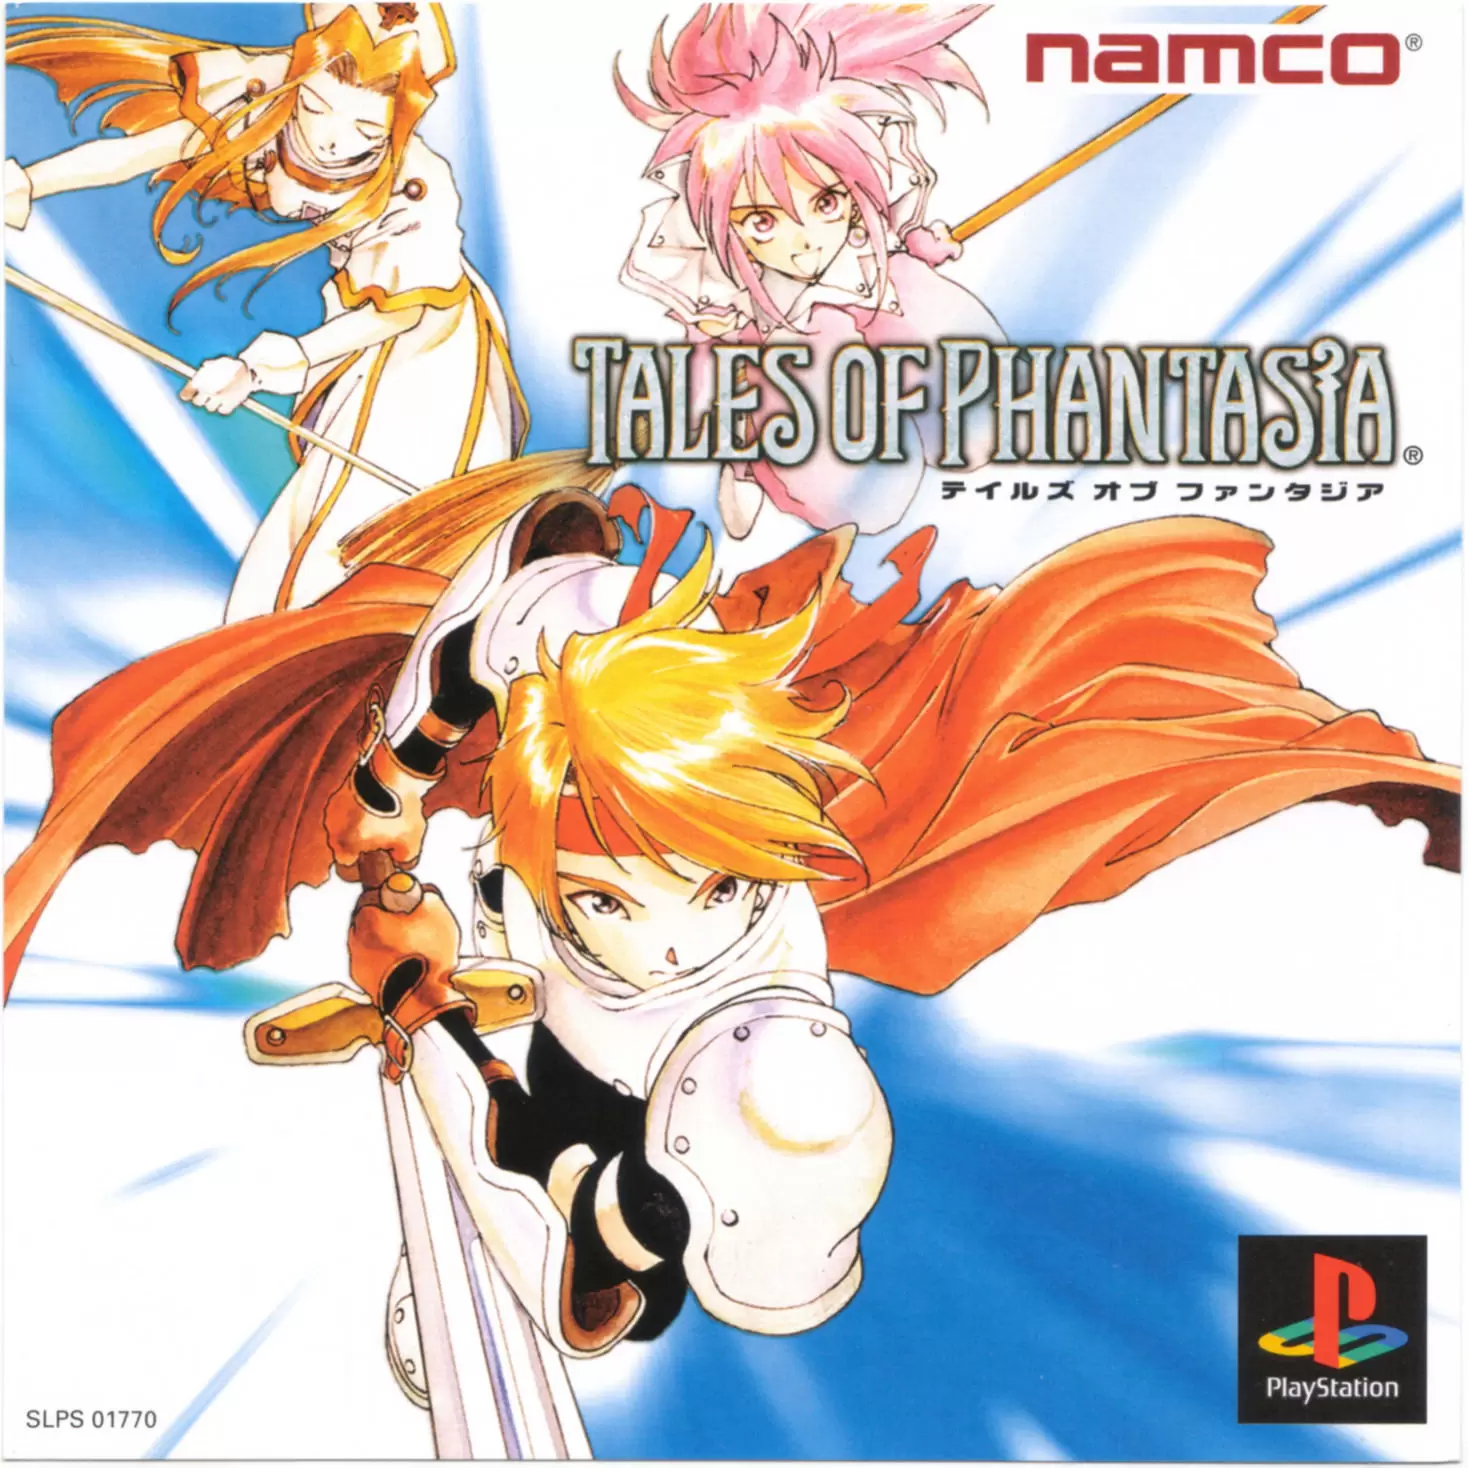 Playstation games - Tales of Phantasia